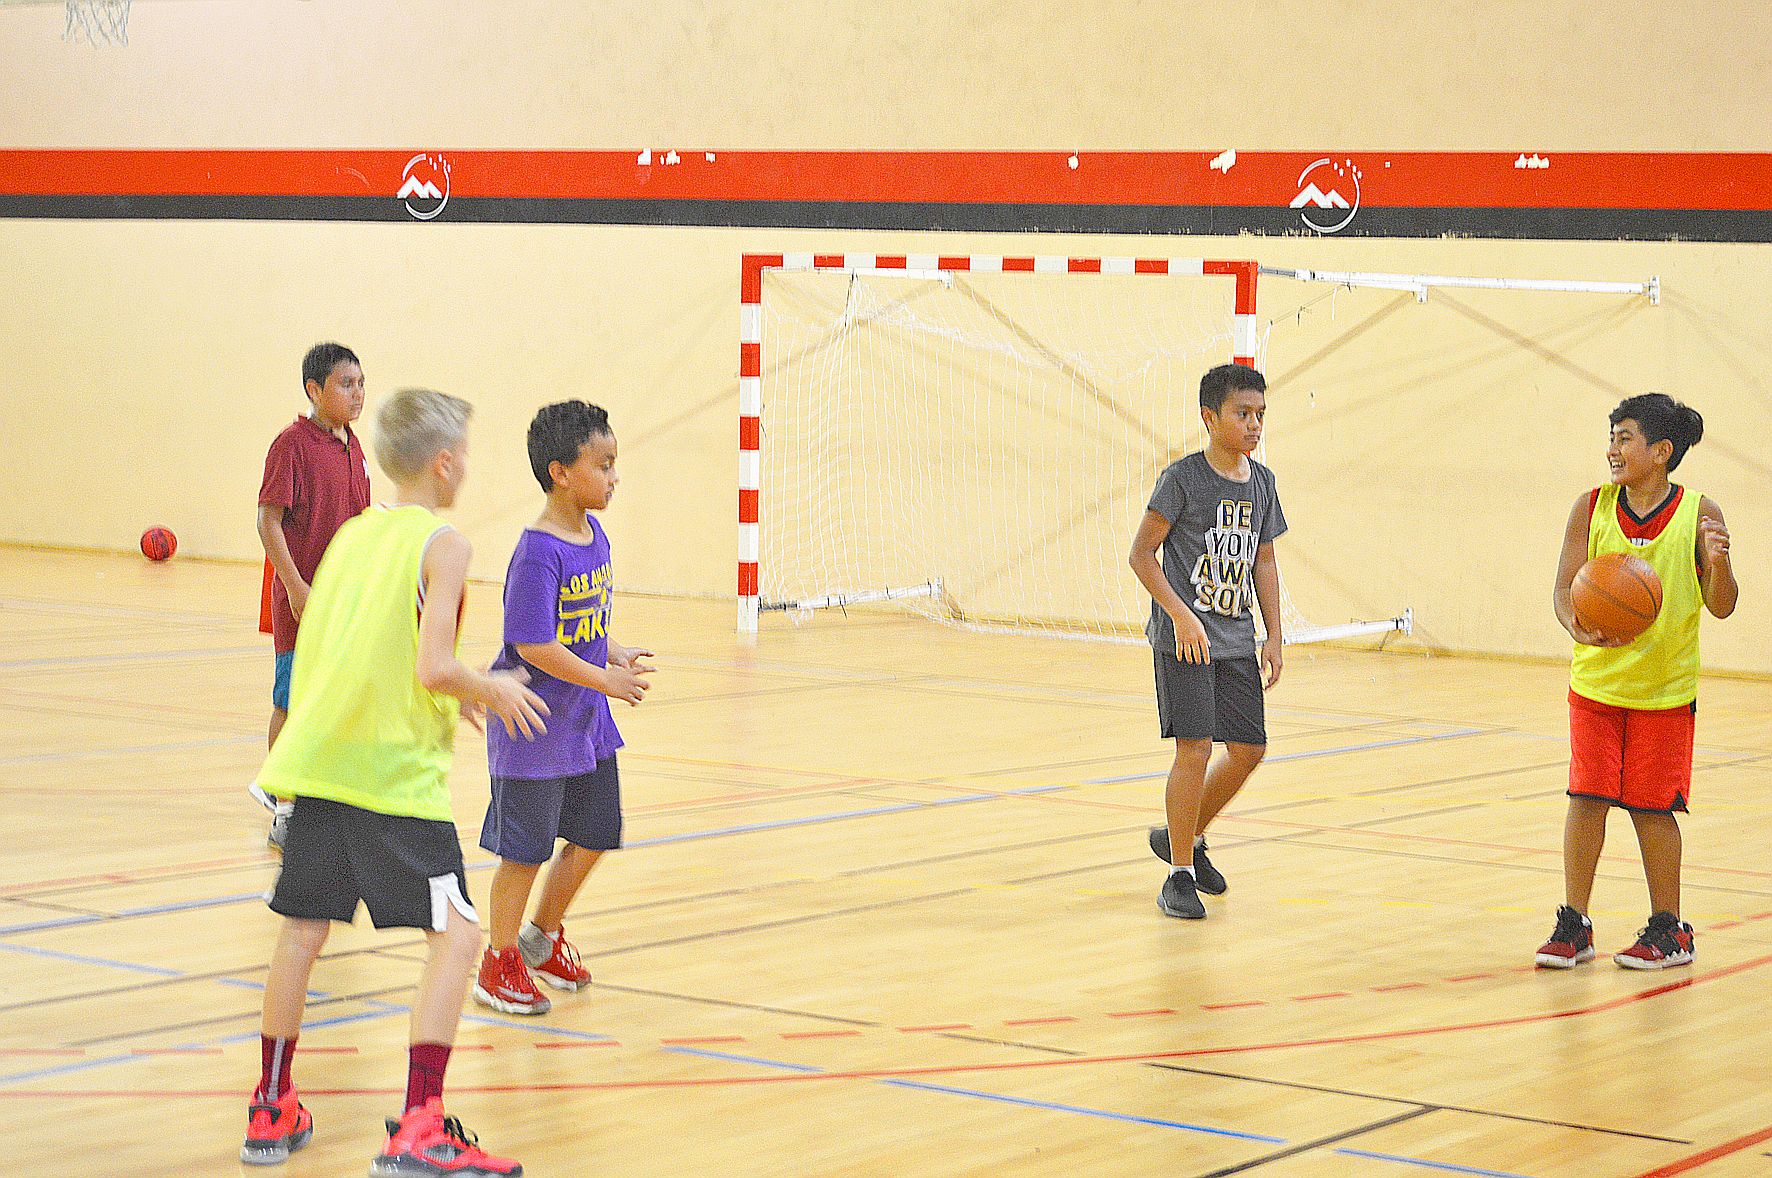 Au complexe sportif de Boulari, le matin est dédié aux activités physiques, comme le basket-ball. L’après-midi, les enfants participent à des activités culturelles et artistiques.